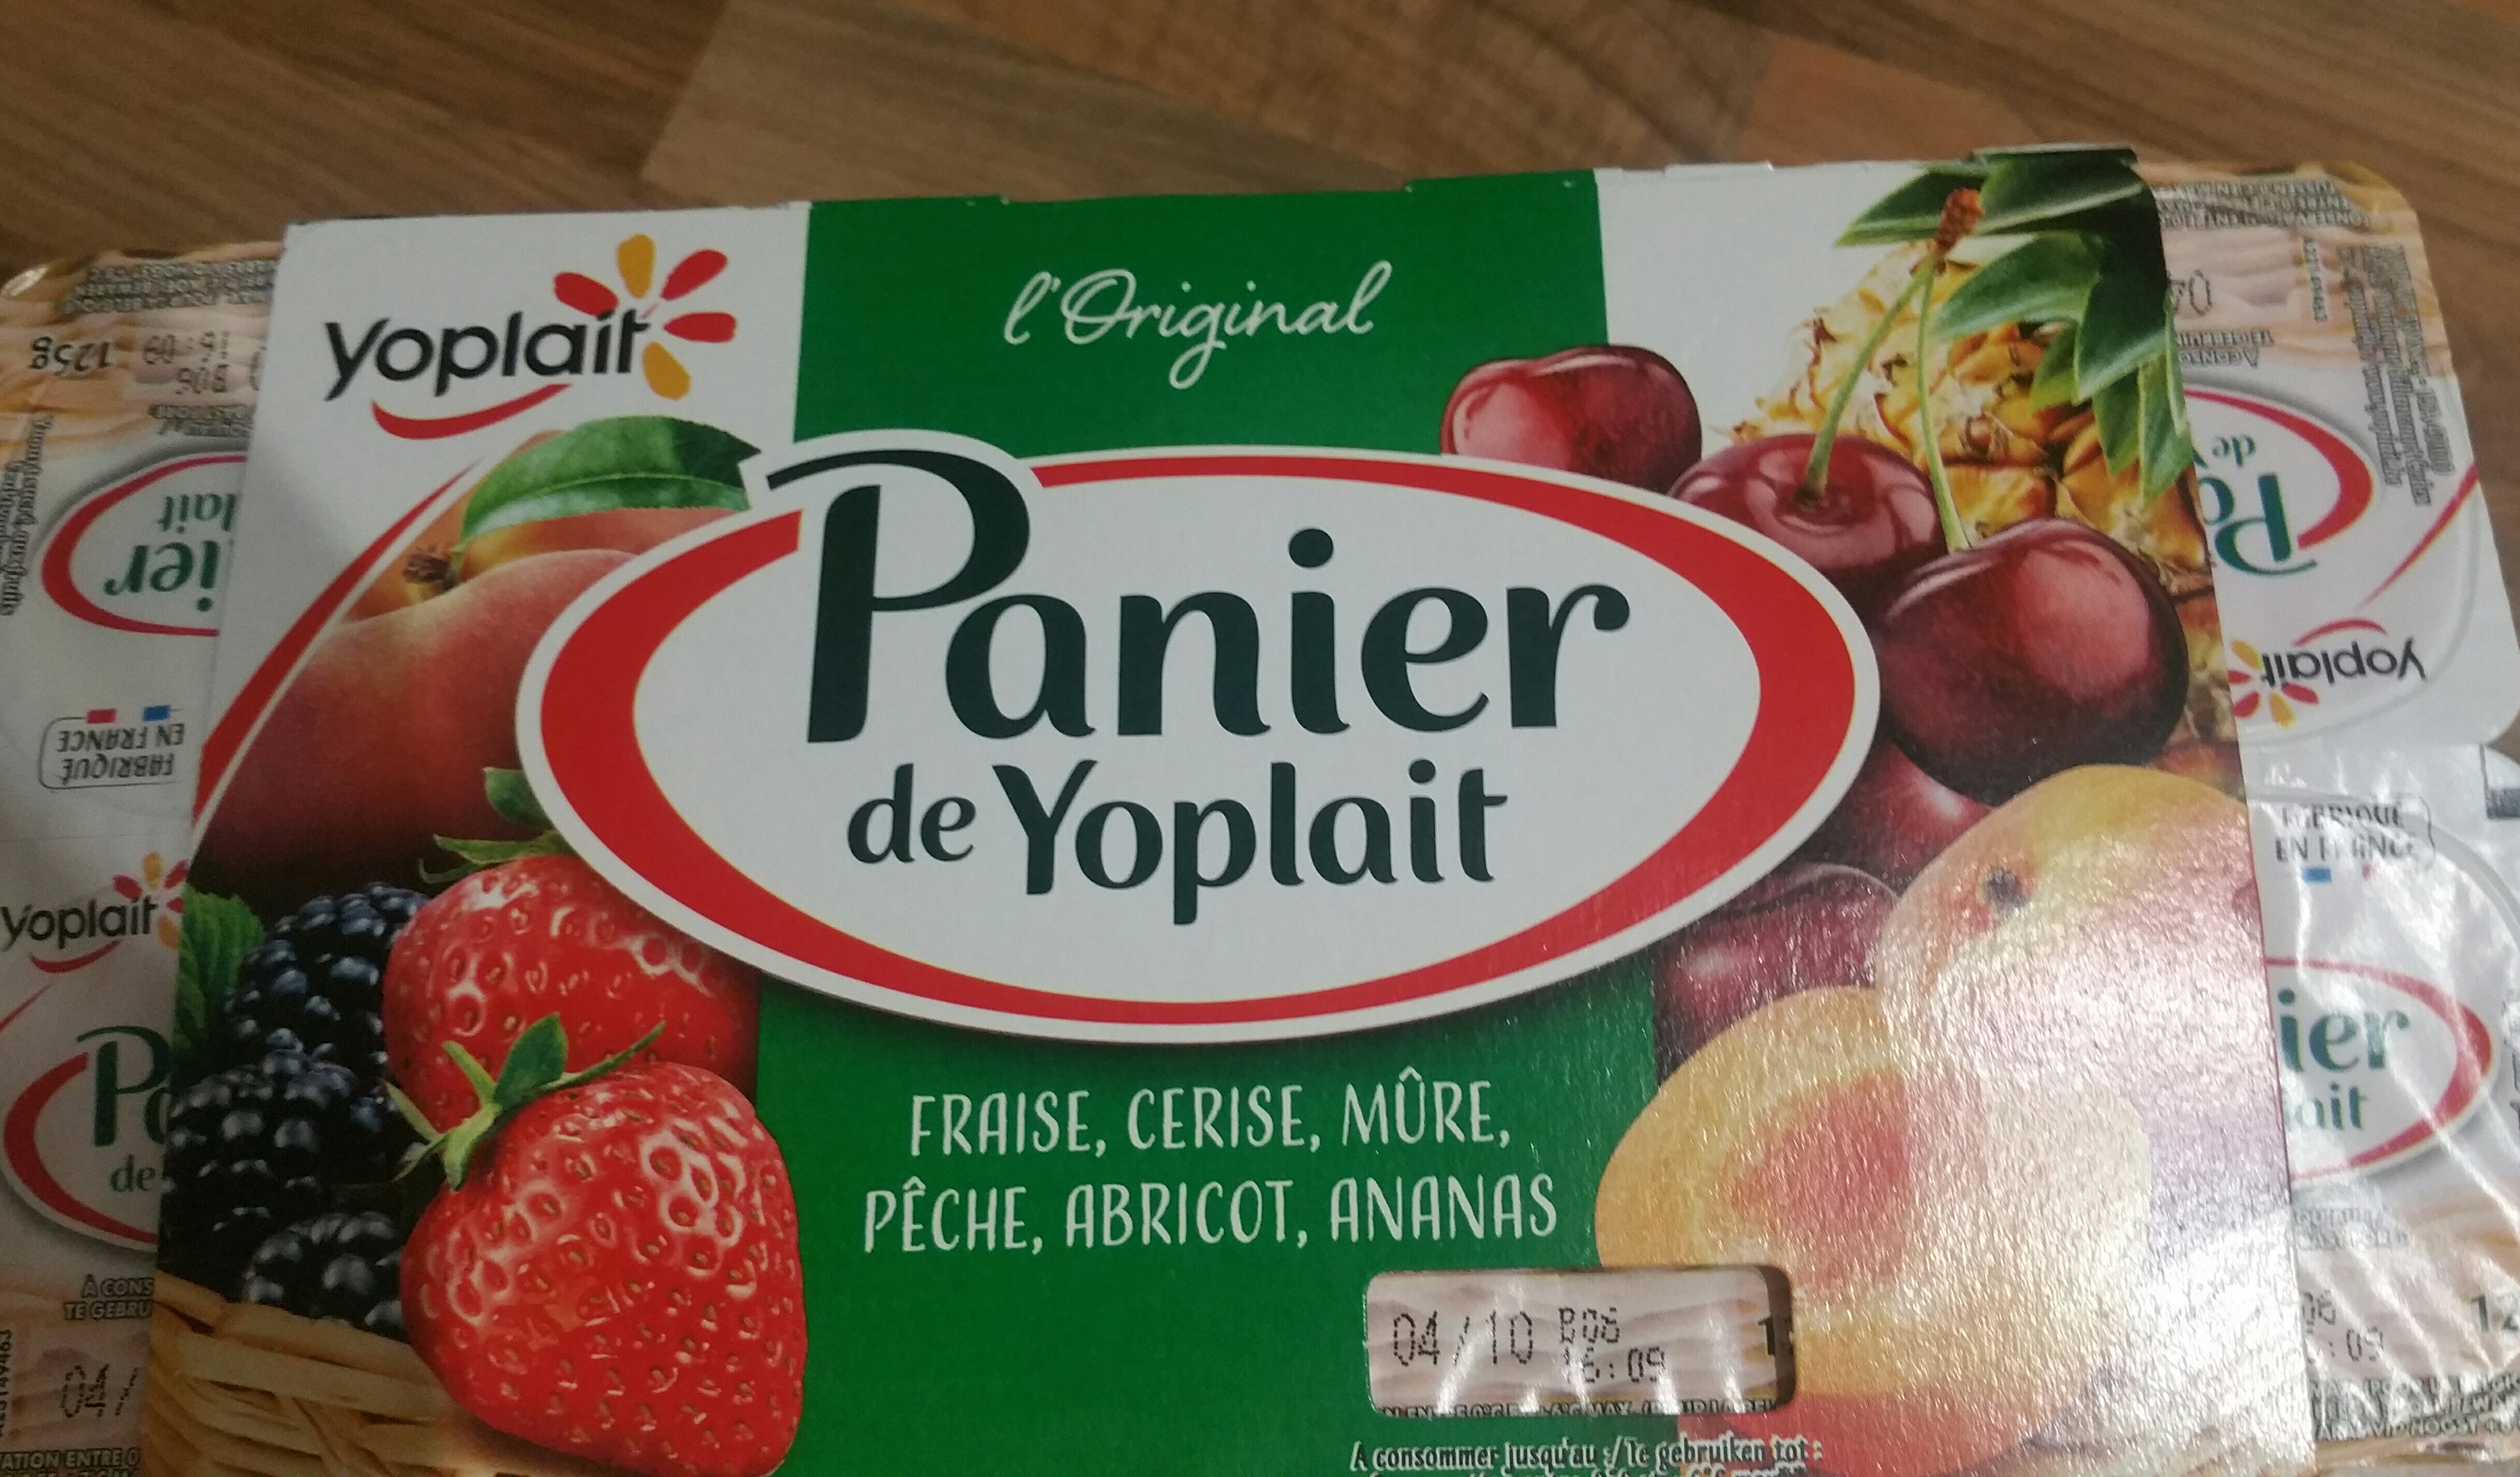 panier de yoplait - Product - fr